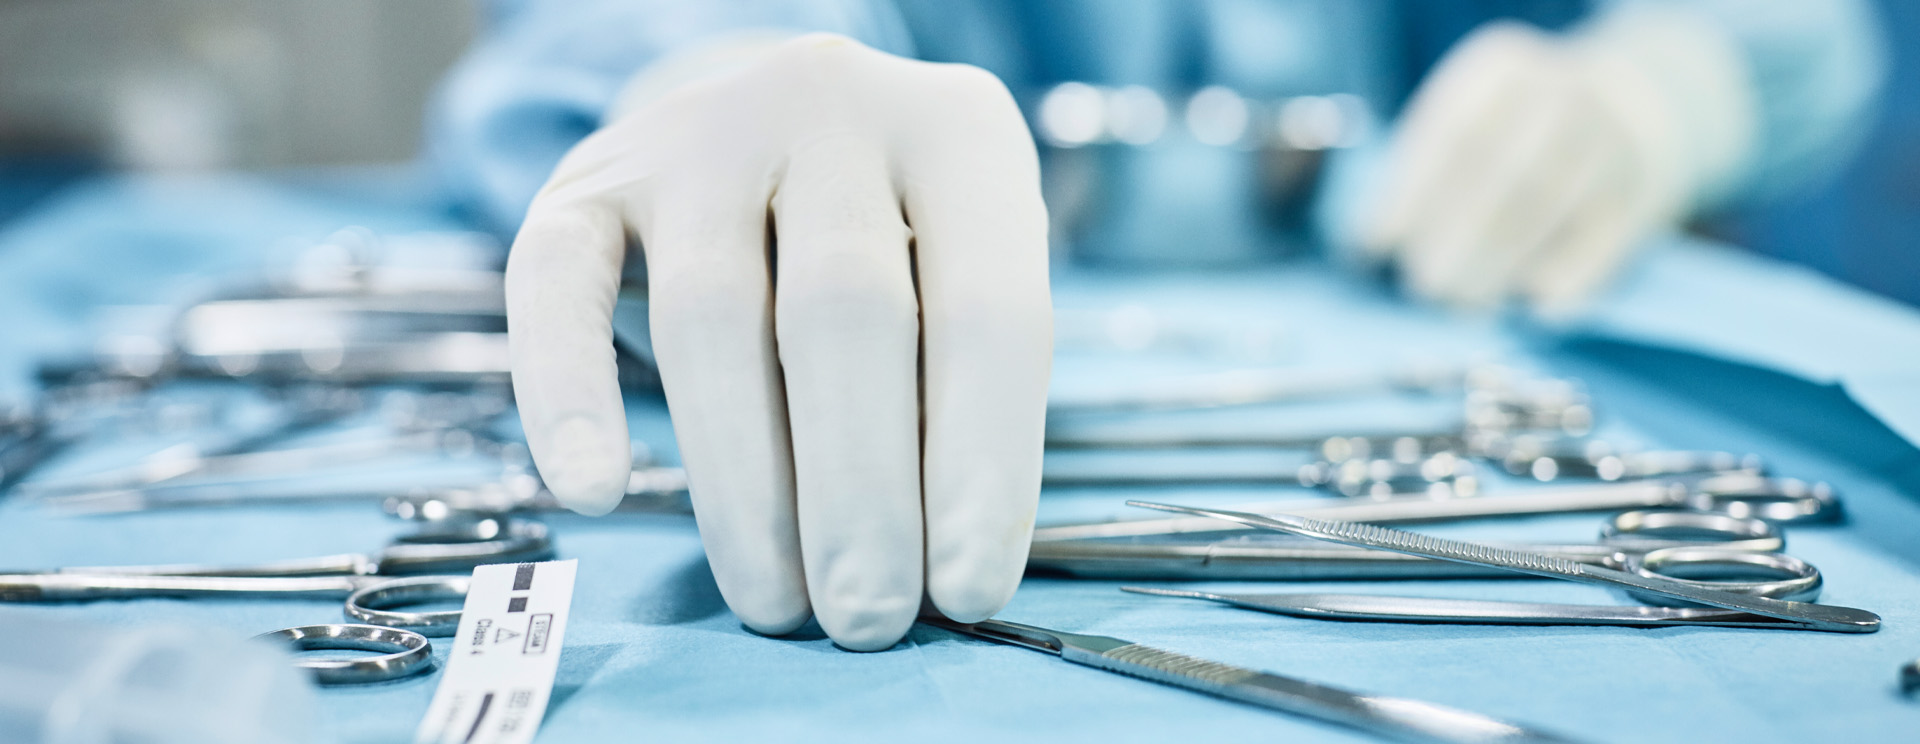 Längere Lebensdauer für chirurgische Instrumente